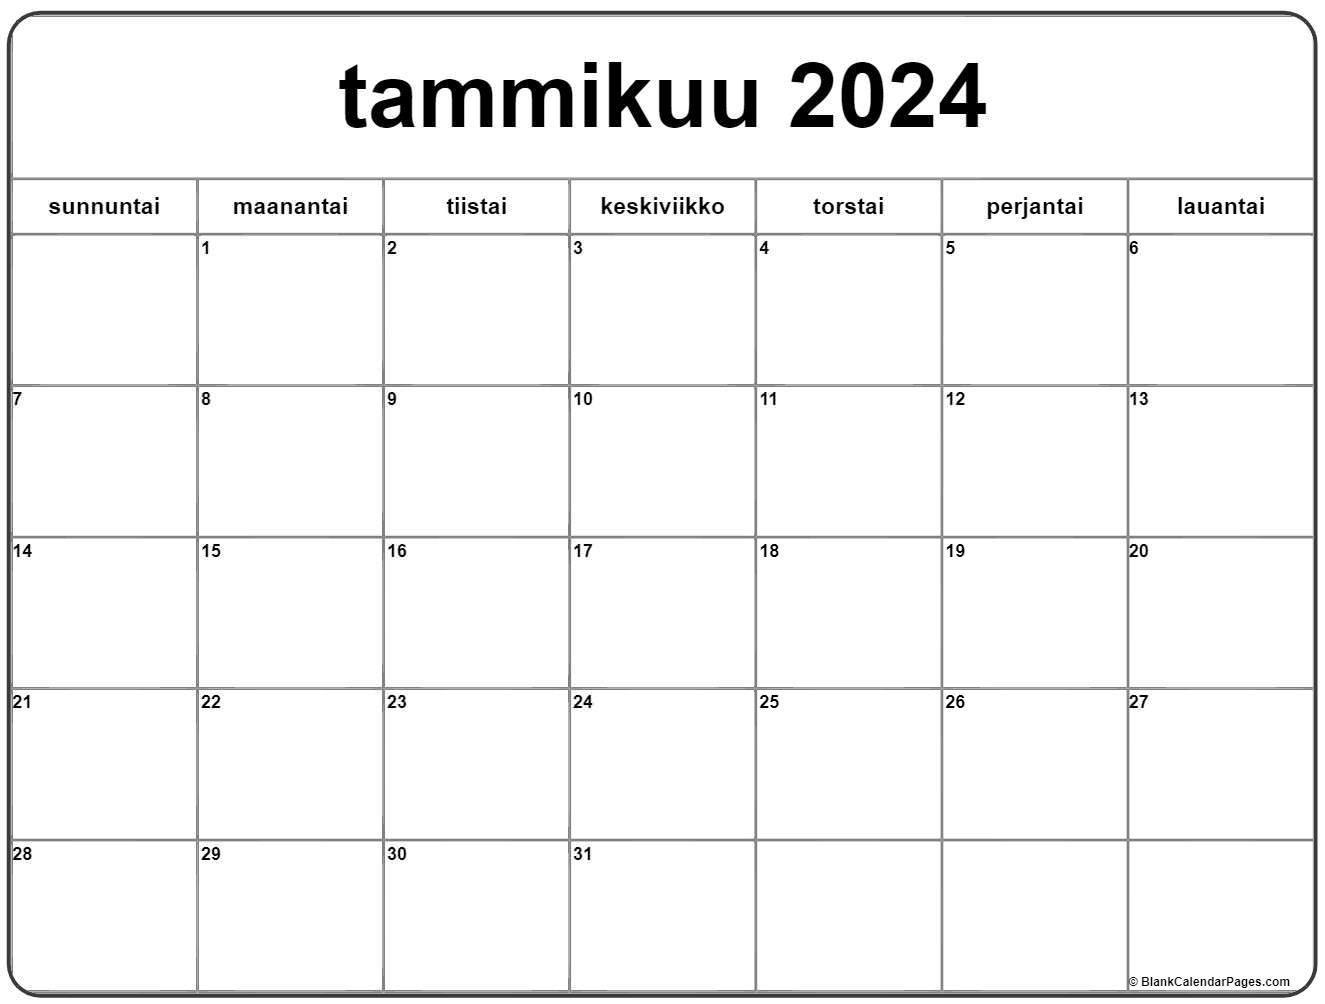 tammikuu-2024-tulostettava-kalenteri-suomeksi-kalenteri-tammikuu